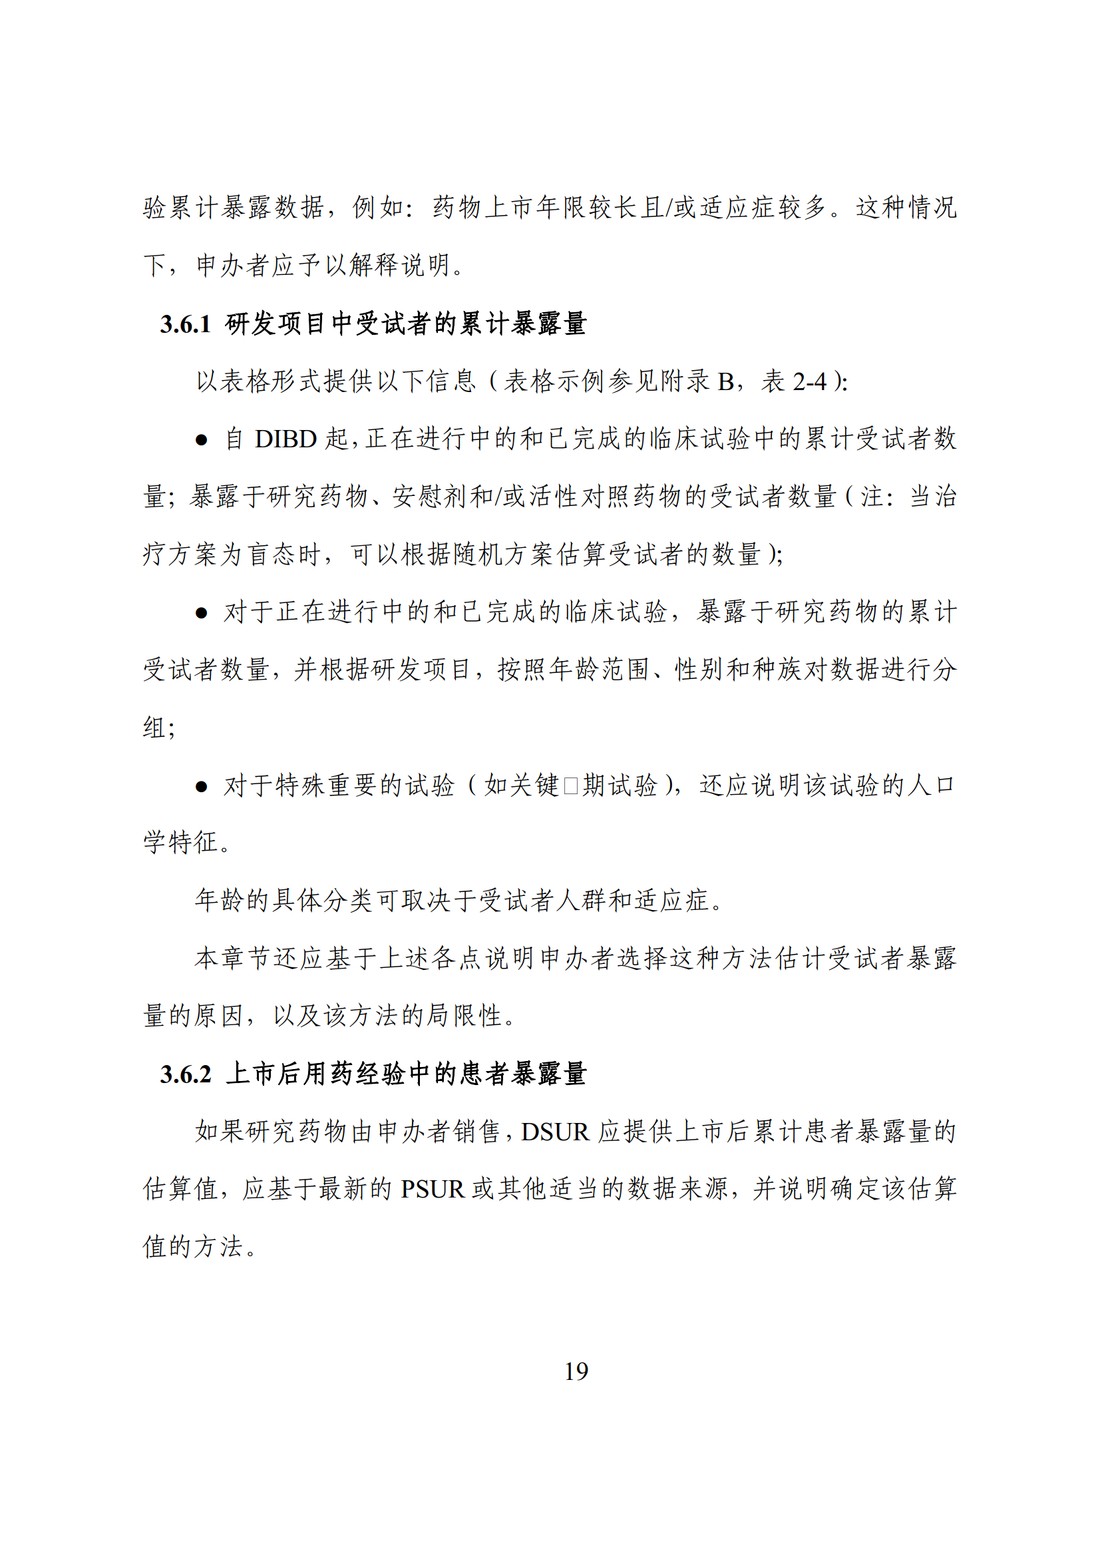 E2F 研发期间安全性更新报告(中文翻译公开征求意见稿)_24.jpg